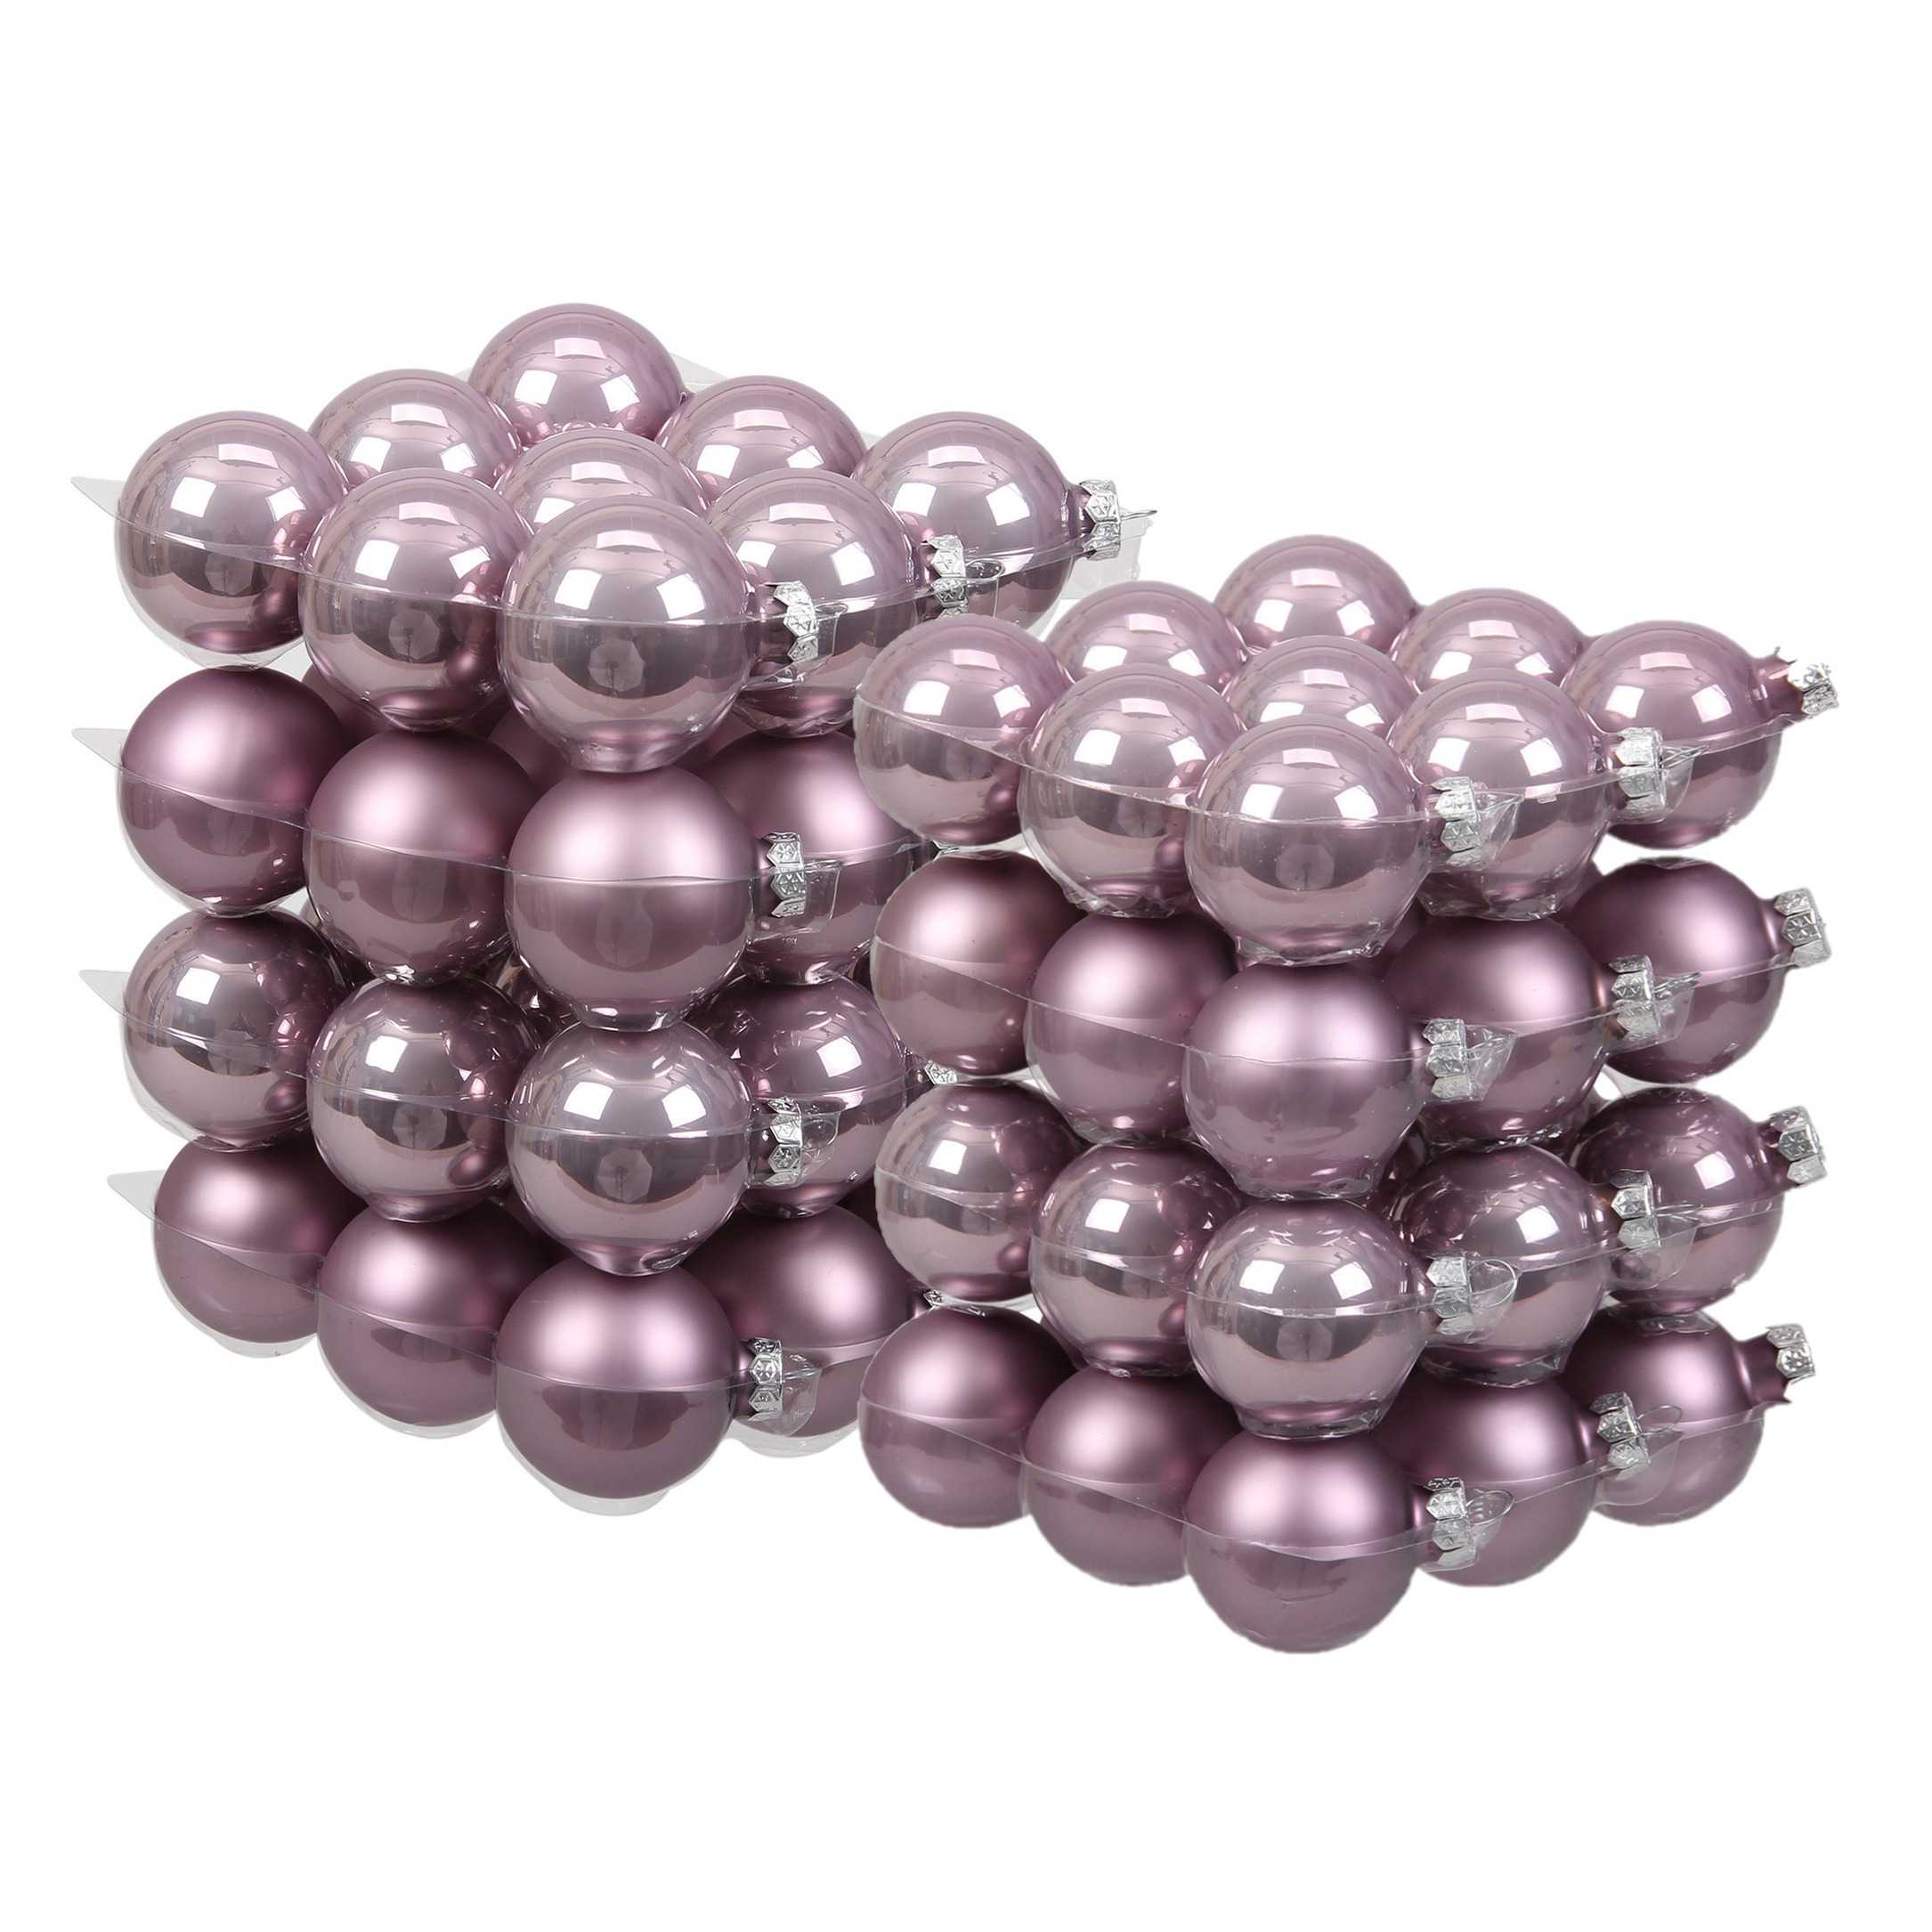 72x stuks glazen kerstballen salie paars (lilac sage) 4 en 6 cm mat-glans